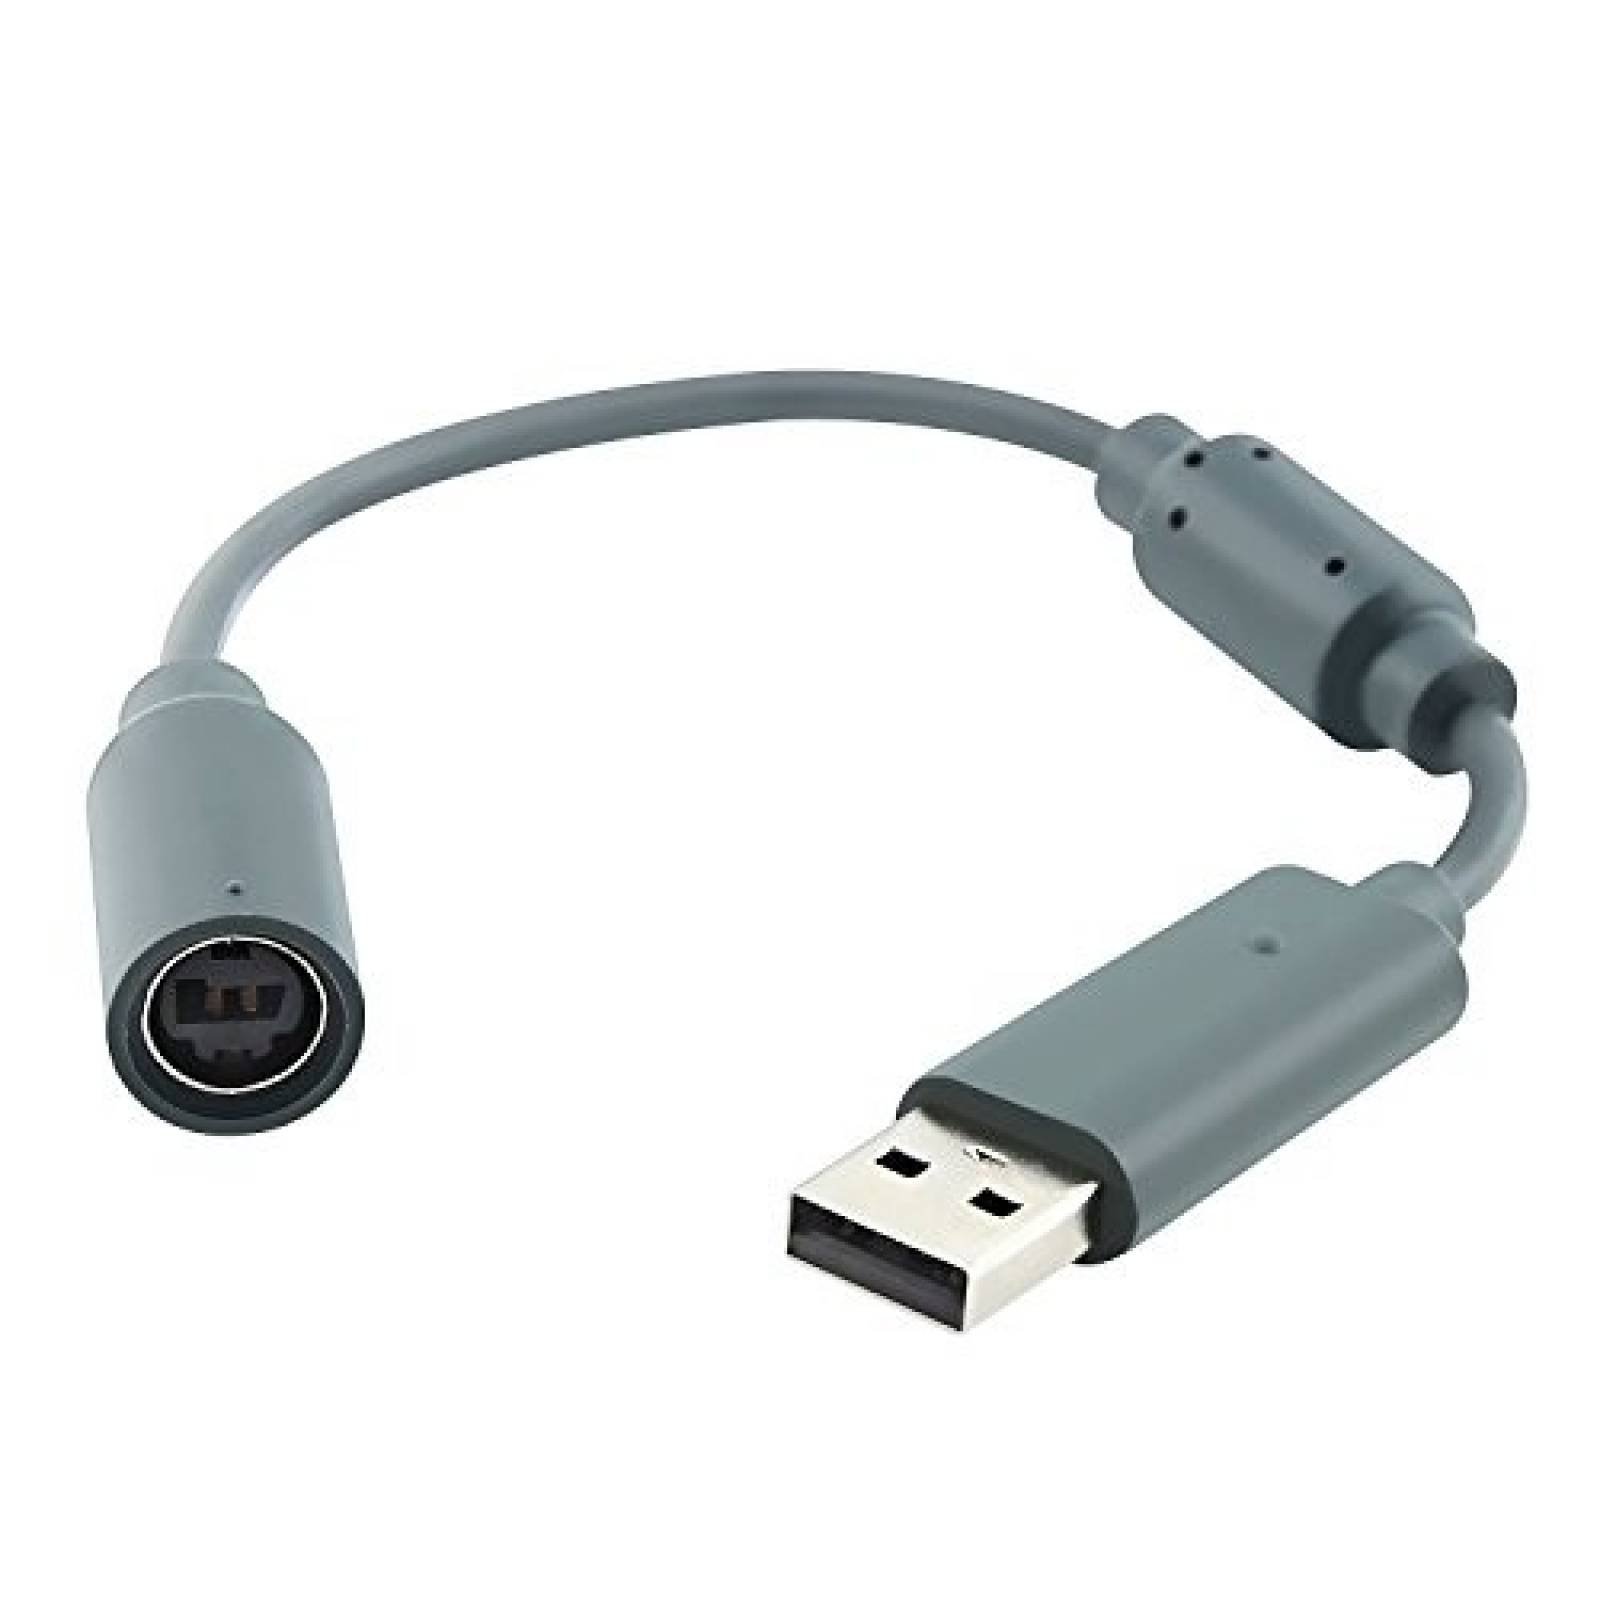 Cable USB Insten de retención compatible con Xbox 360